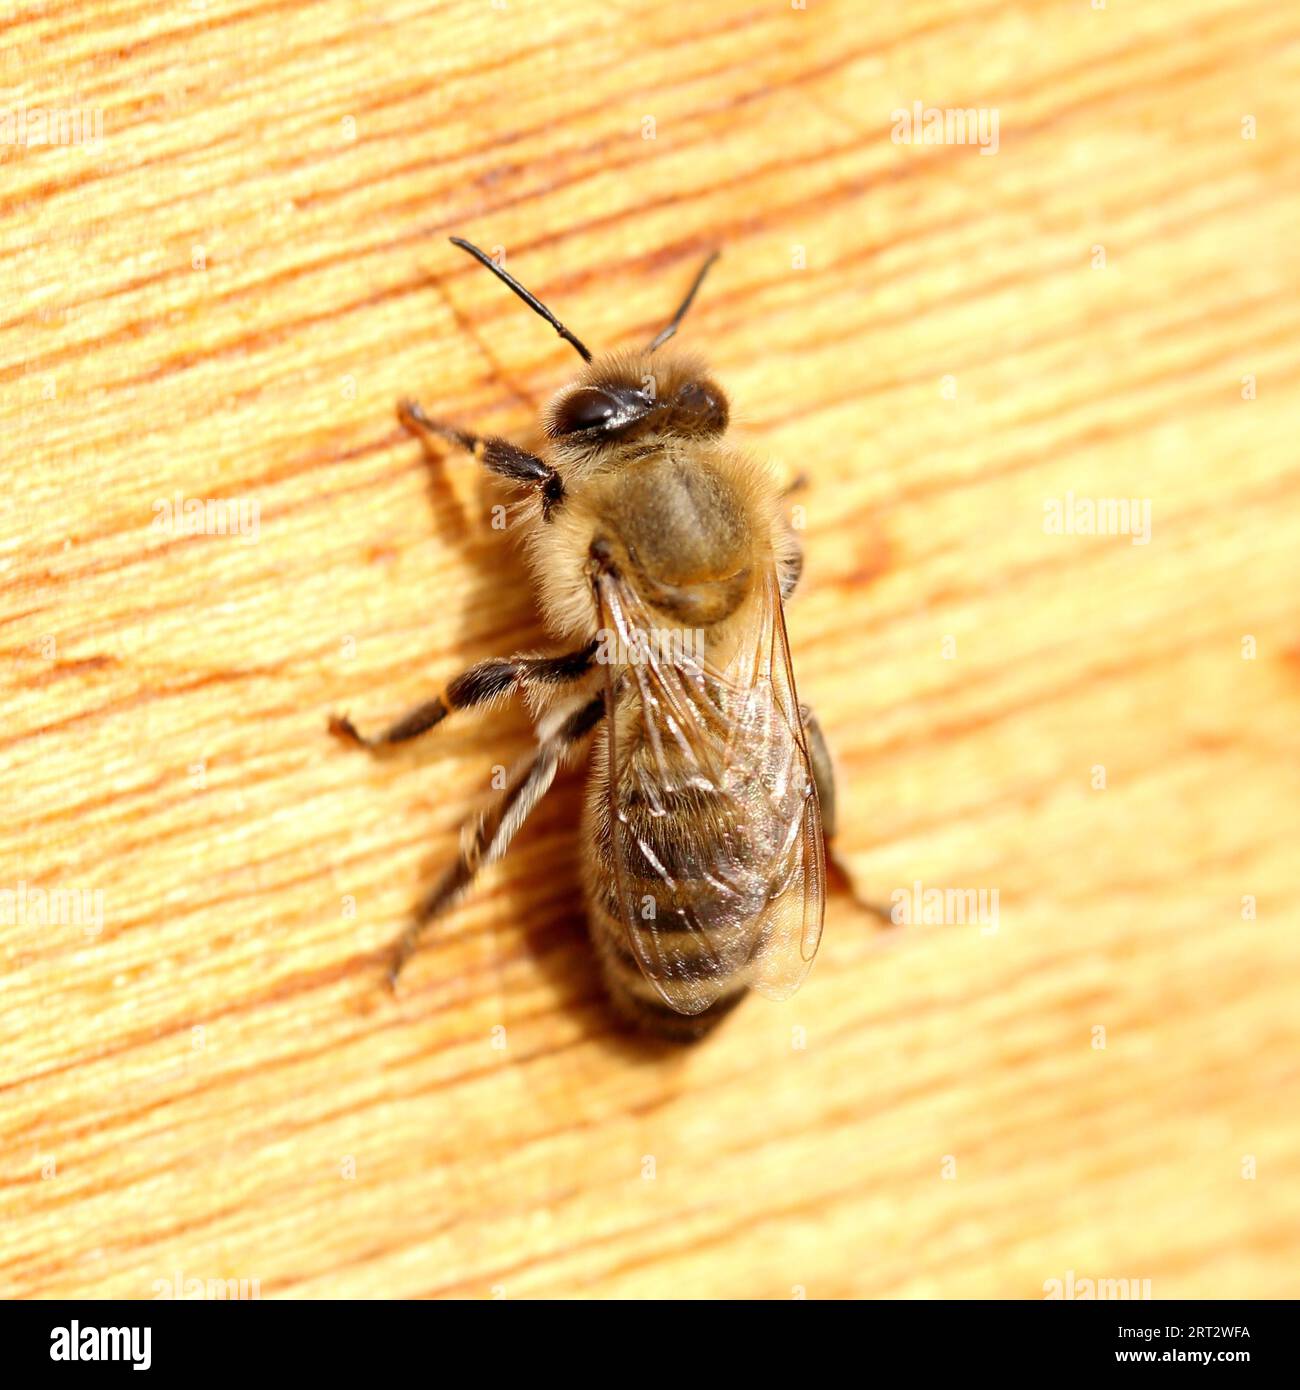 A honey bee Stock Photo